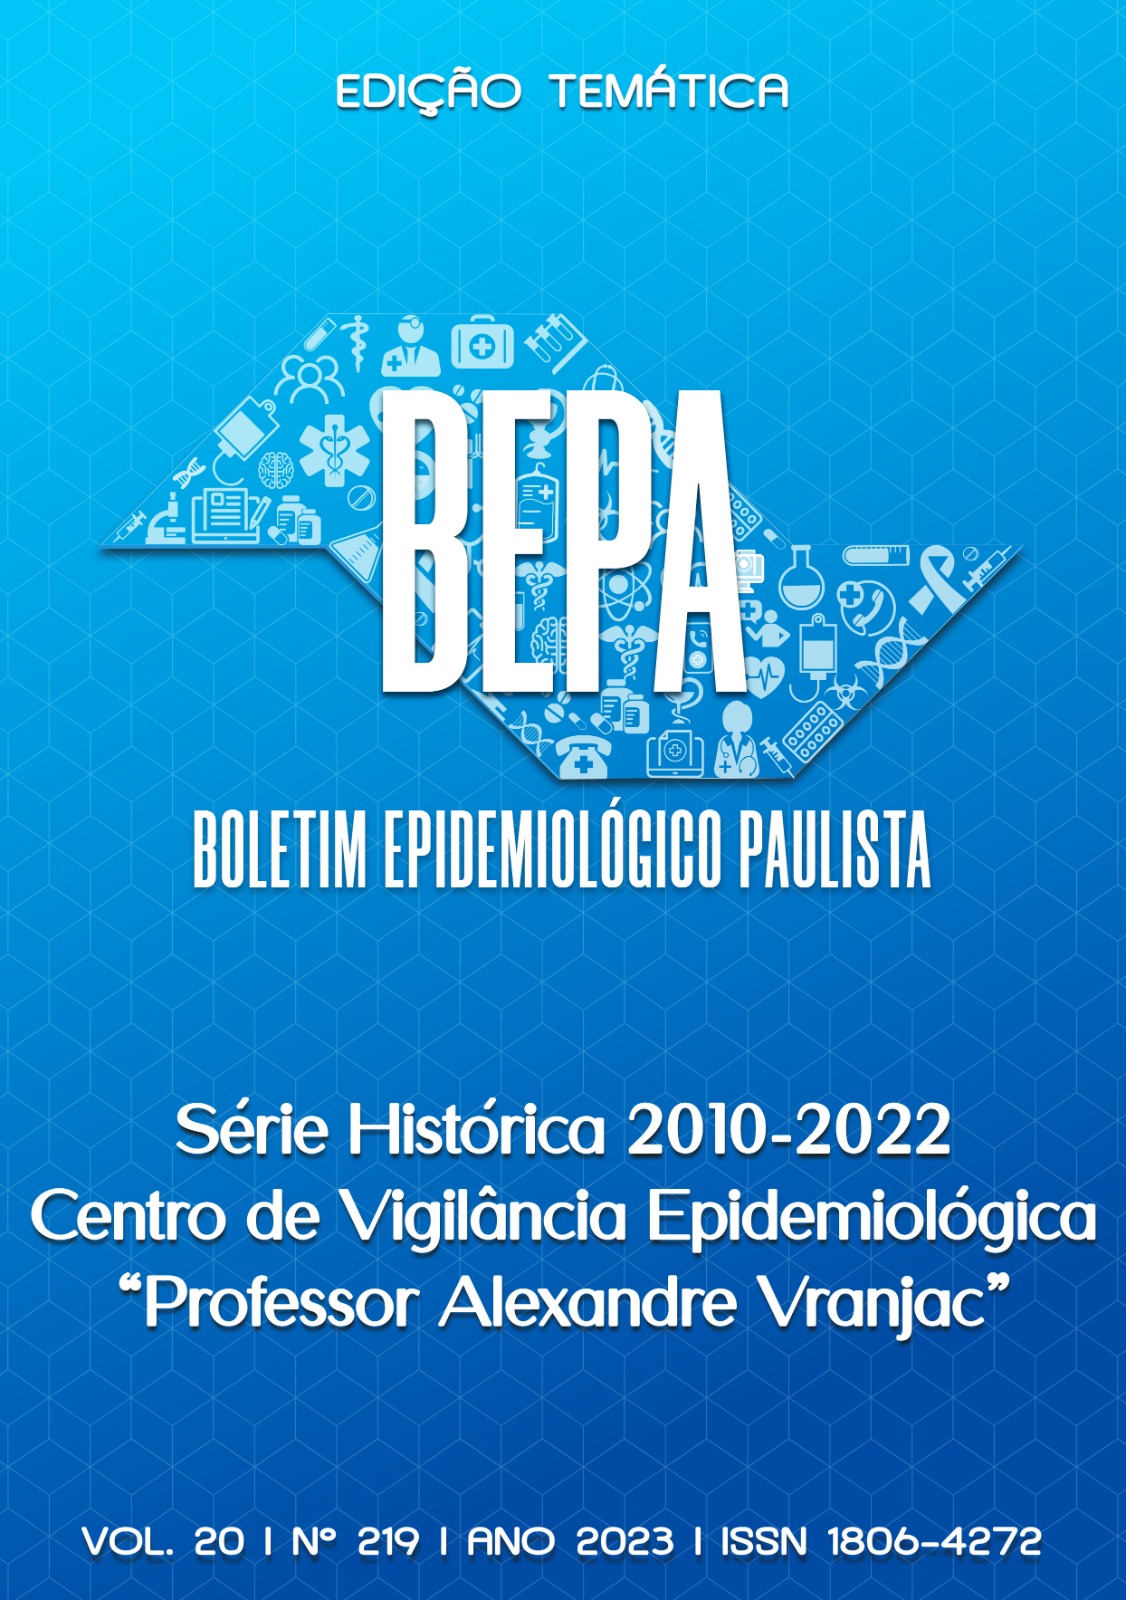 					Visualizar v. 20 (2023): Edição Temática, Série Histórica 2010/2022, CVE "Prof. Alexandre Vranjac"
				